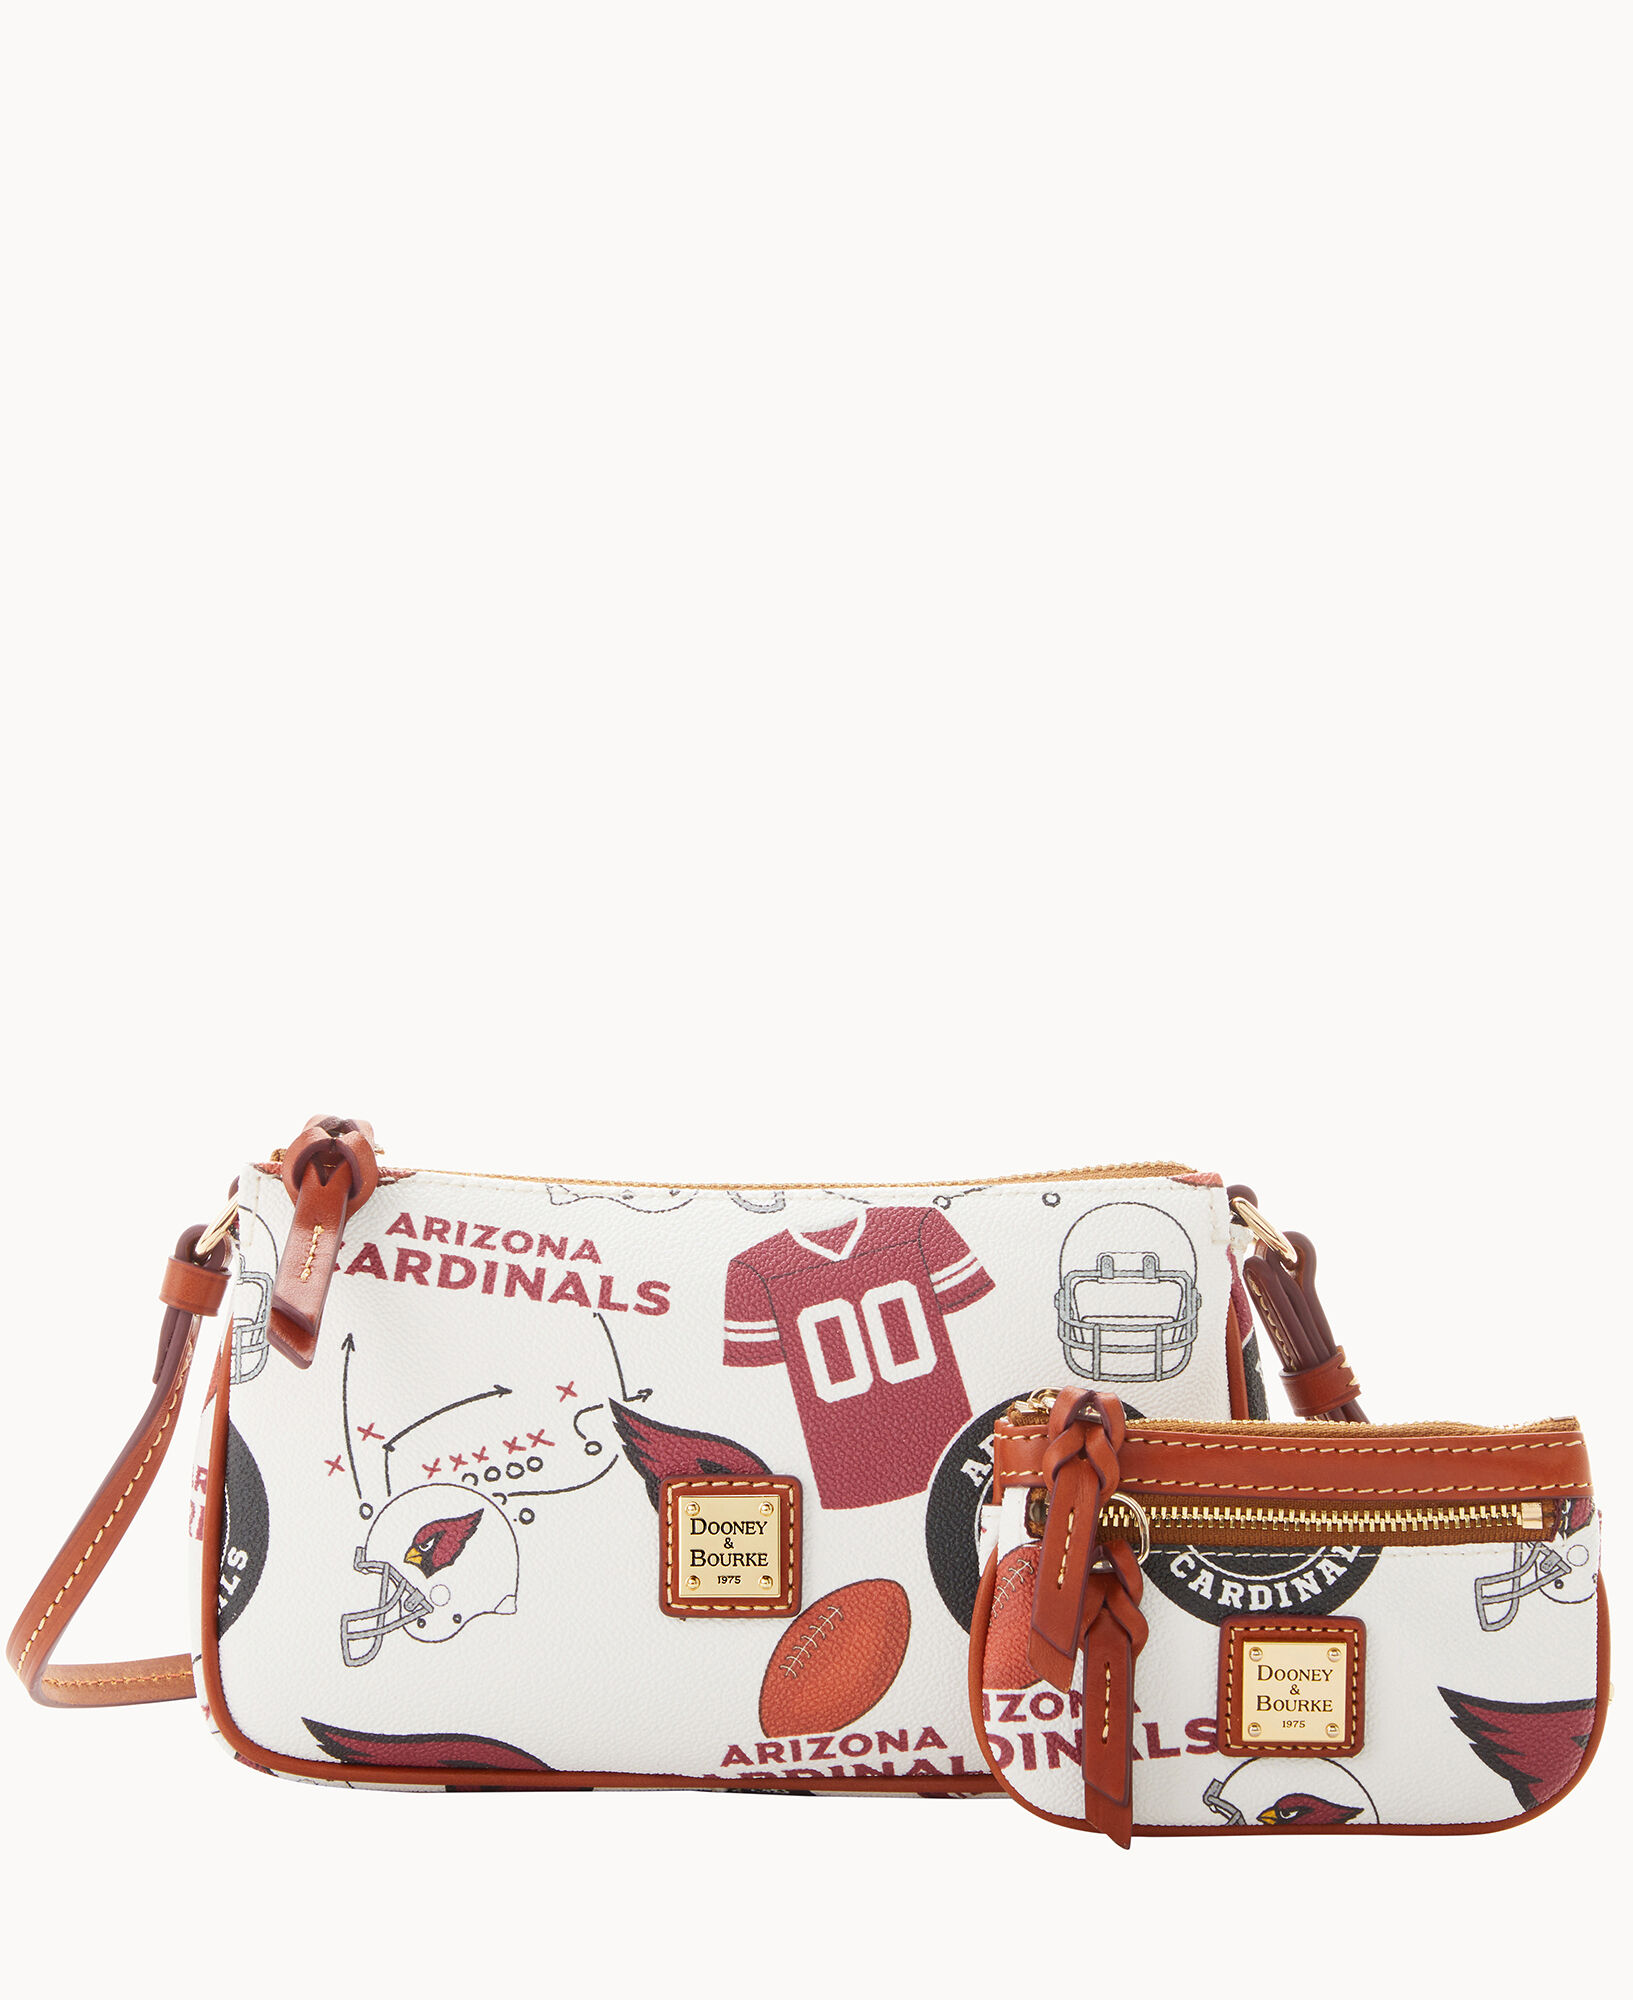 Dooney & Bourke Arizona Cardinals Small Zip Crossbody Bag